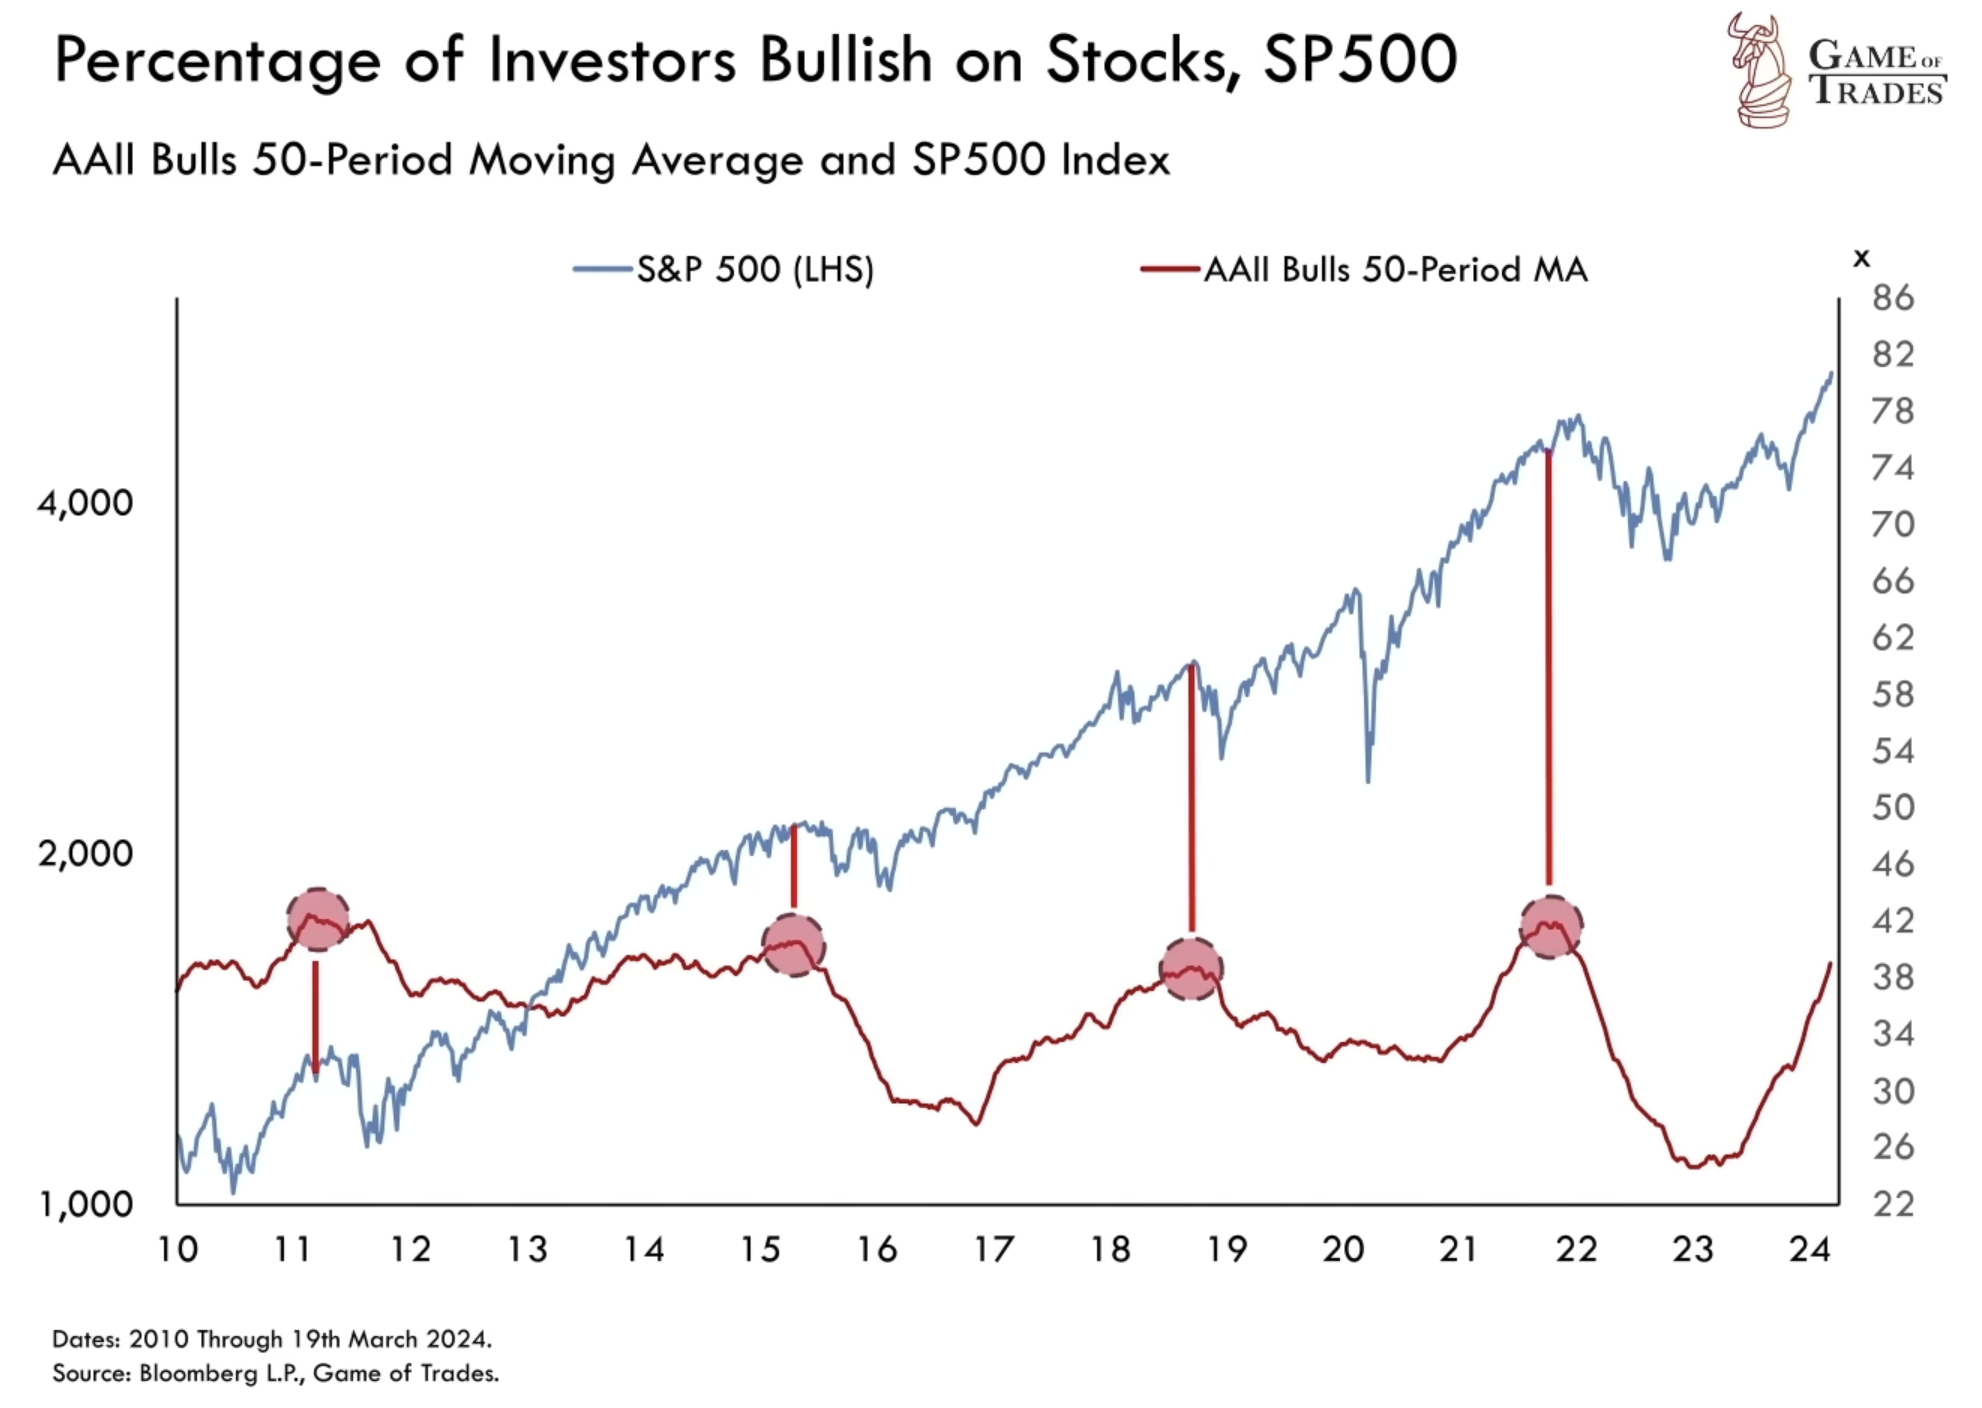 Investor bullish on stocks